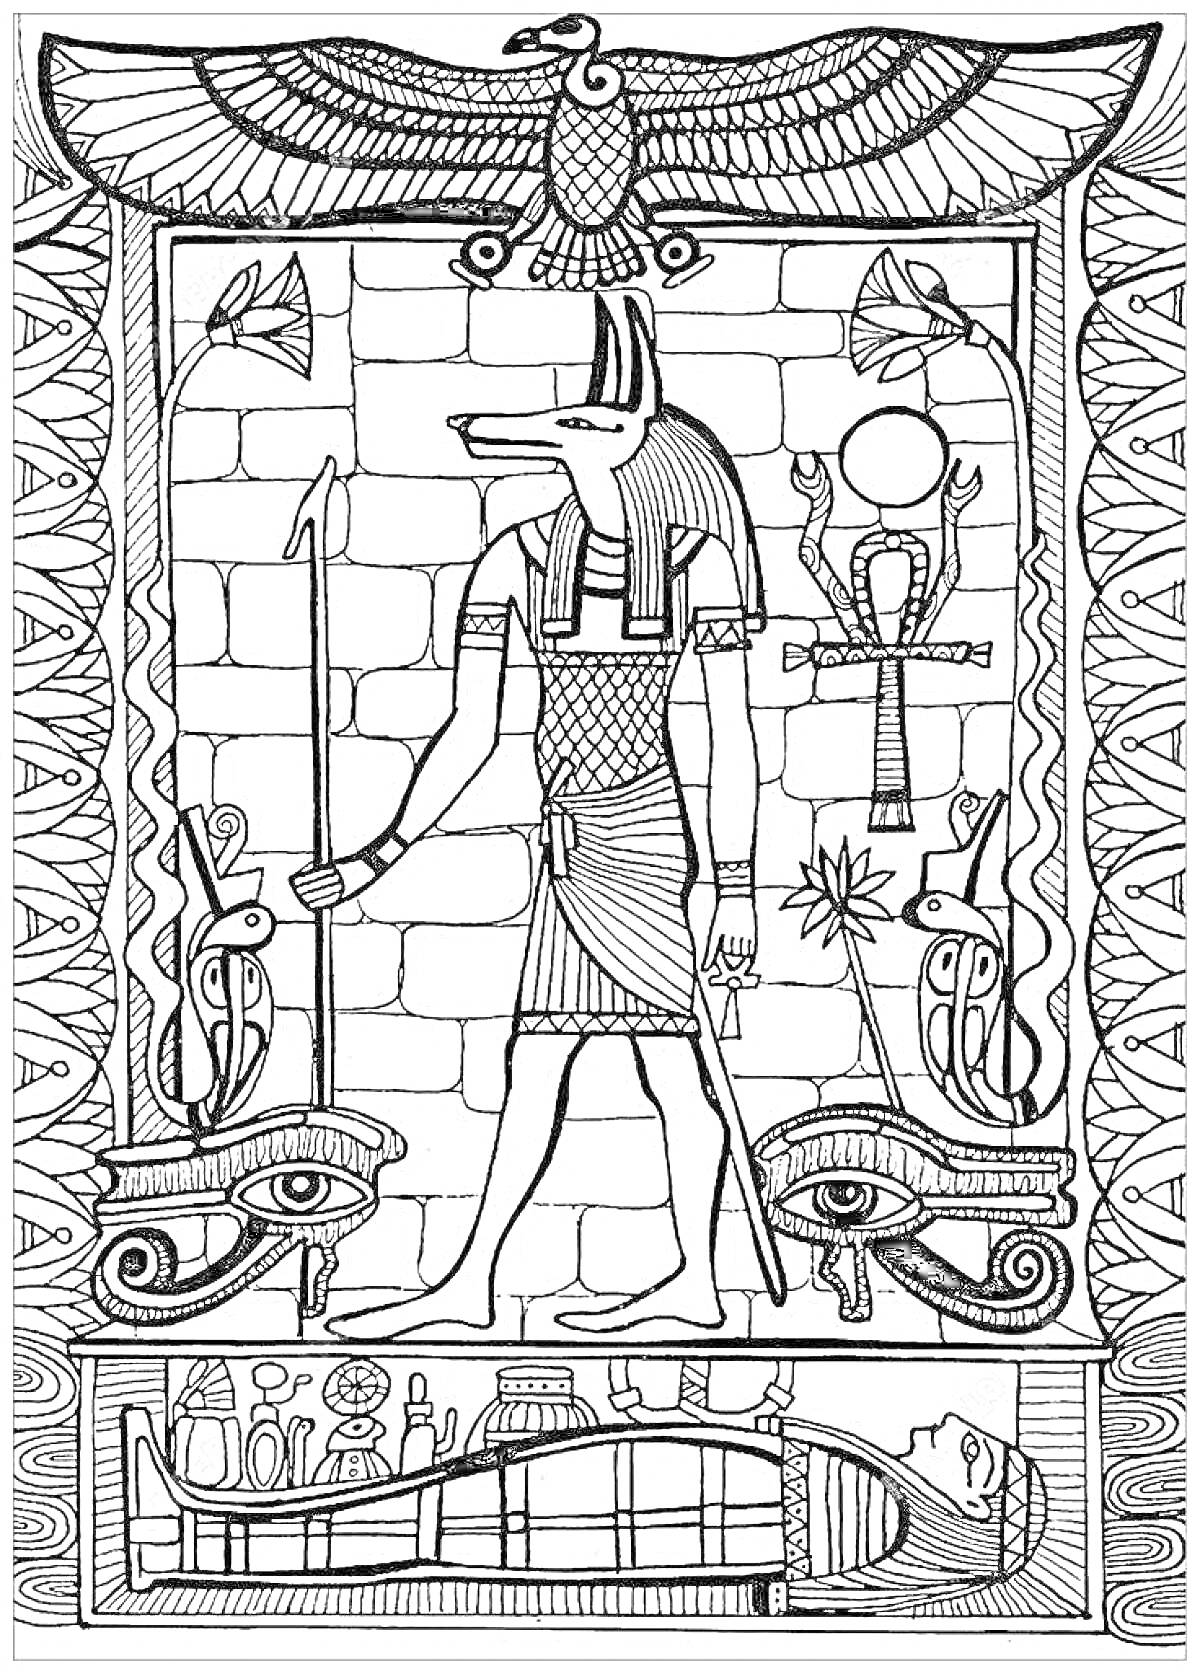  Анубис в Древнем Египте: бог с головой шакала, анкх, жук-скарабей, цветы лотоса, глазы Гора, мумия, кобра, иероглифы, фреска со змеями и птицами